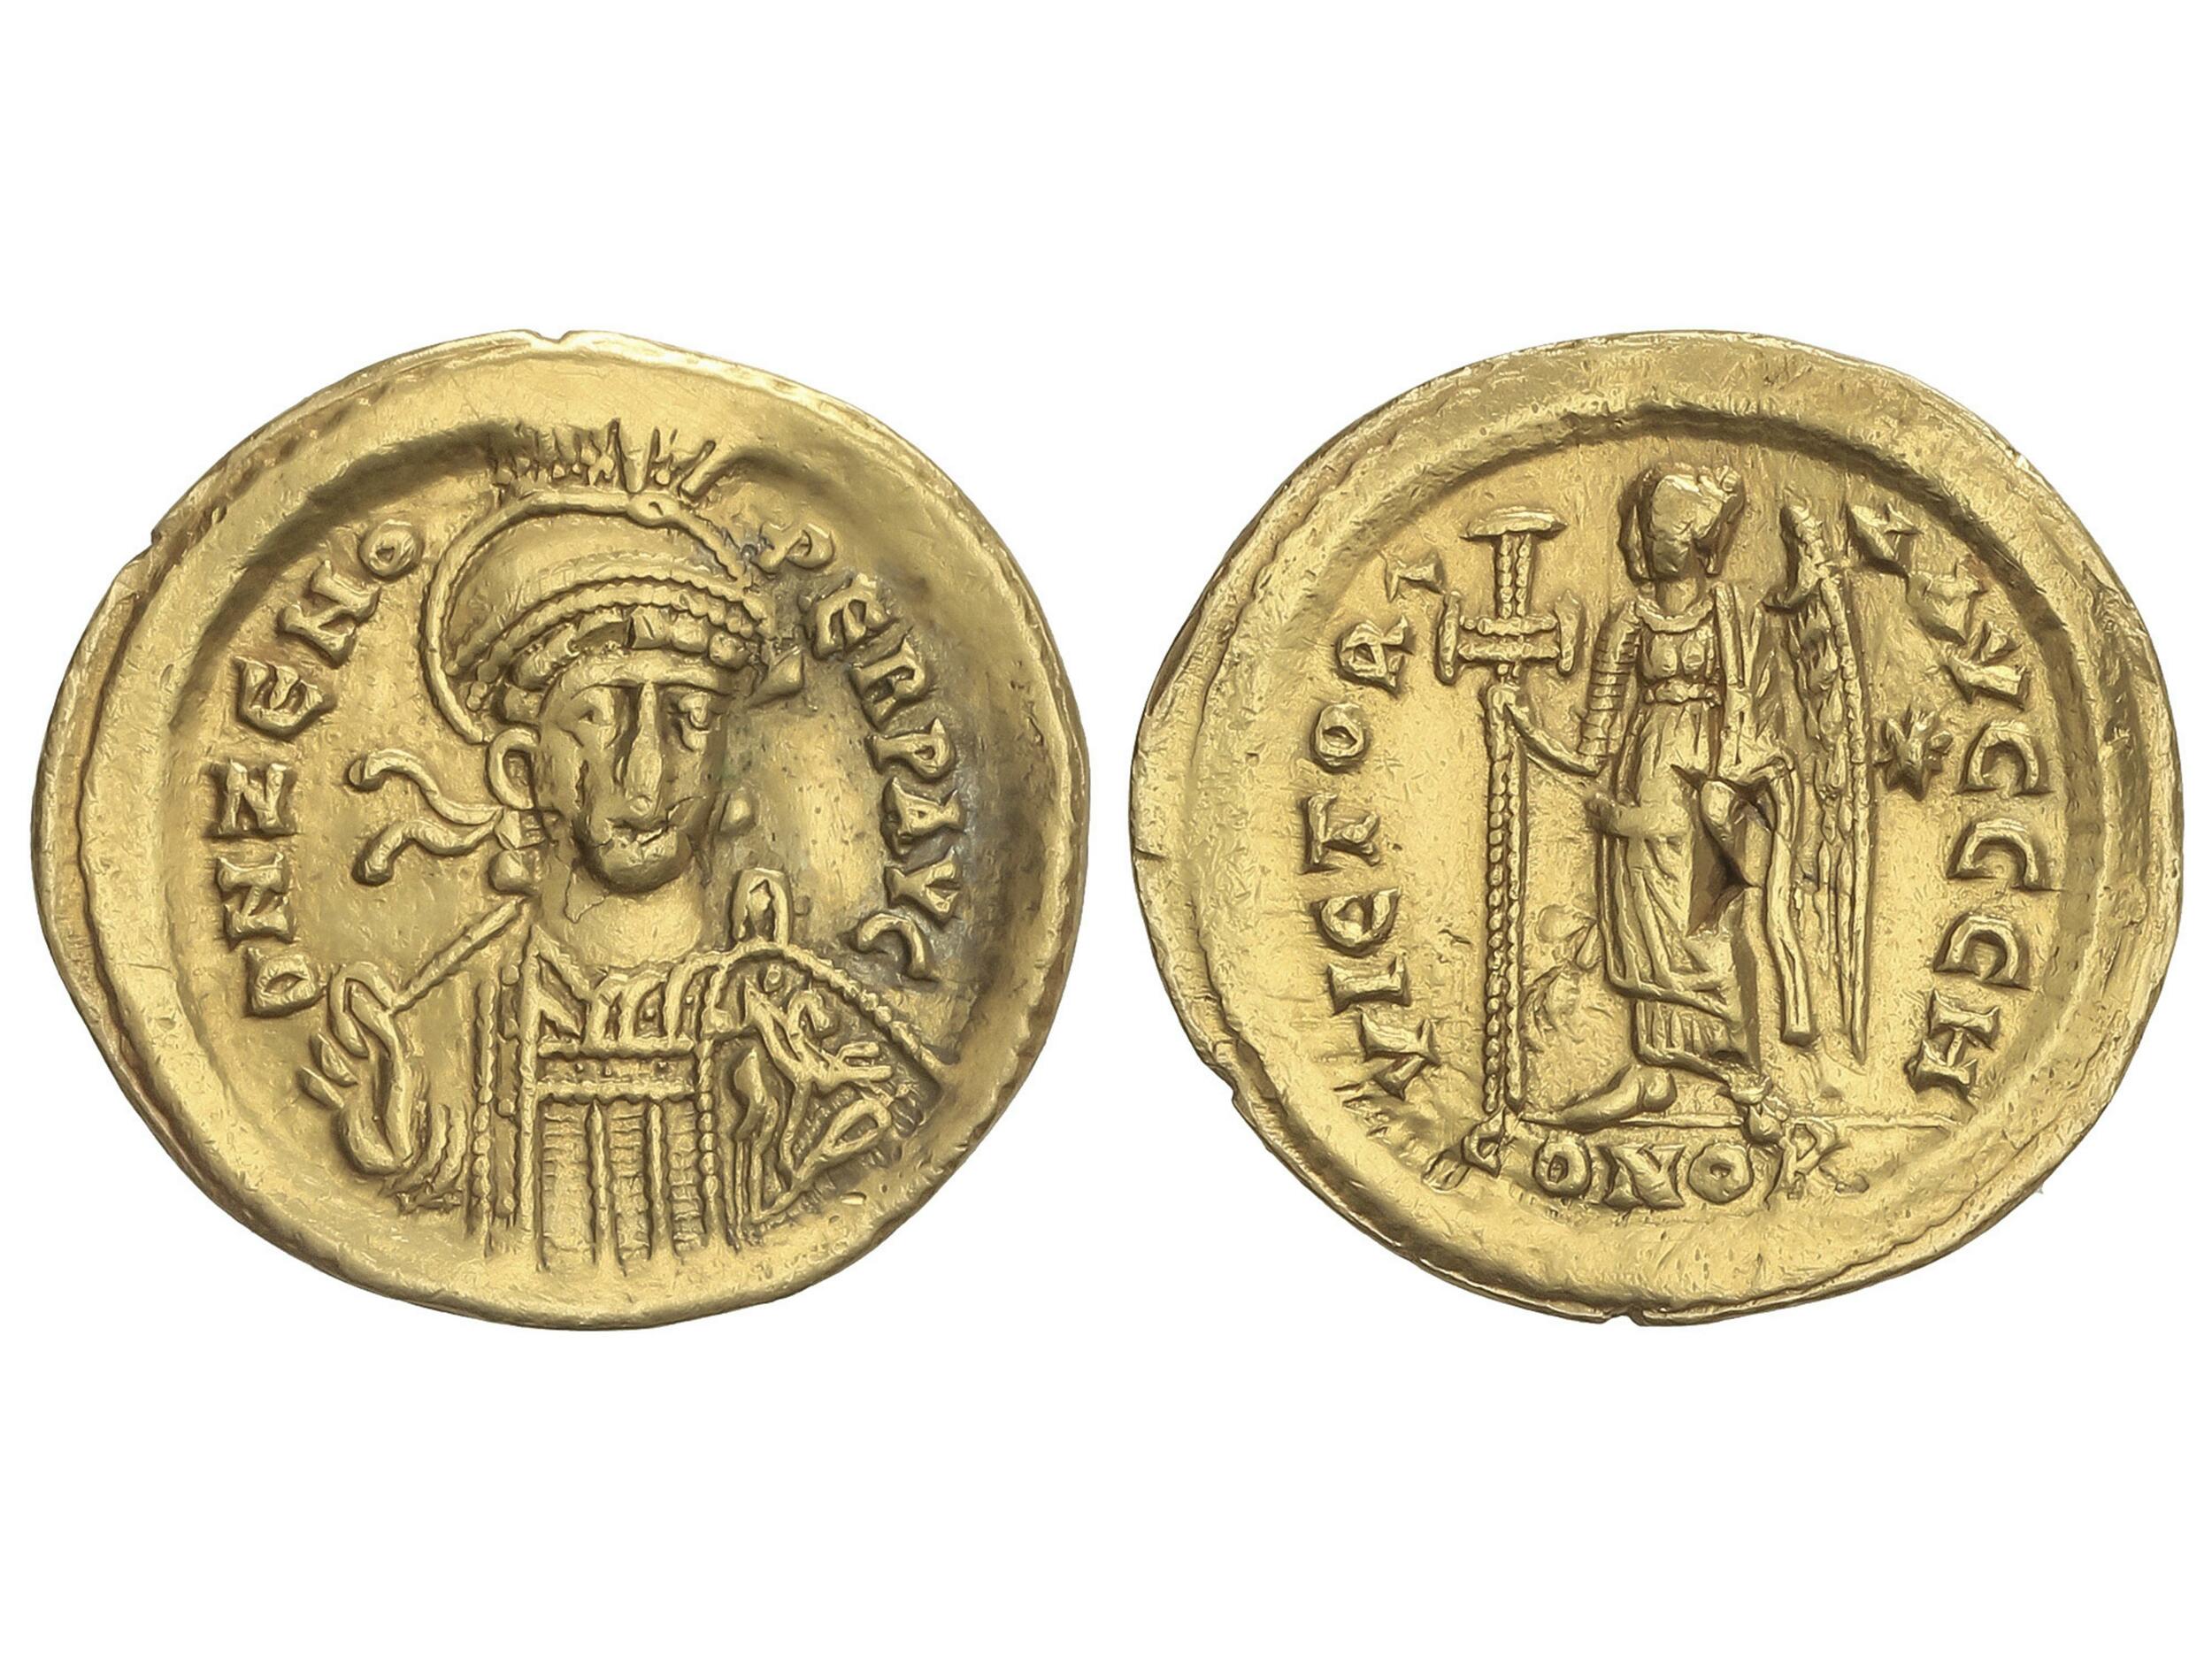 10.40.90: Antike - Oströmisches Reich - Zeno, 474 - 491